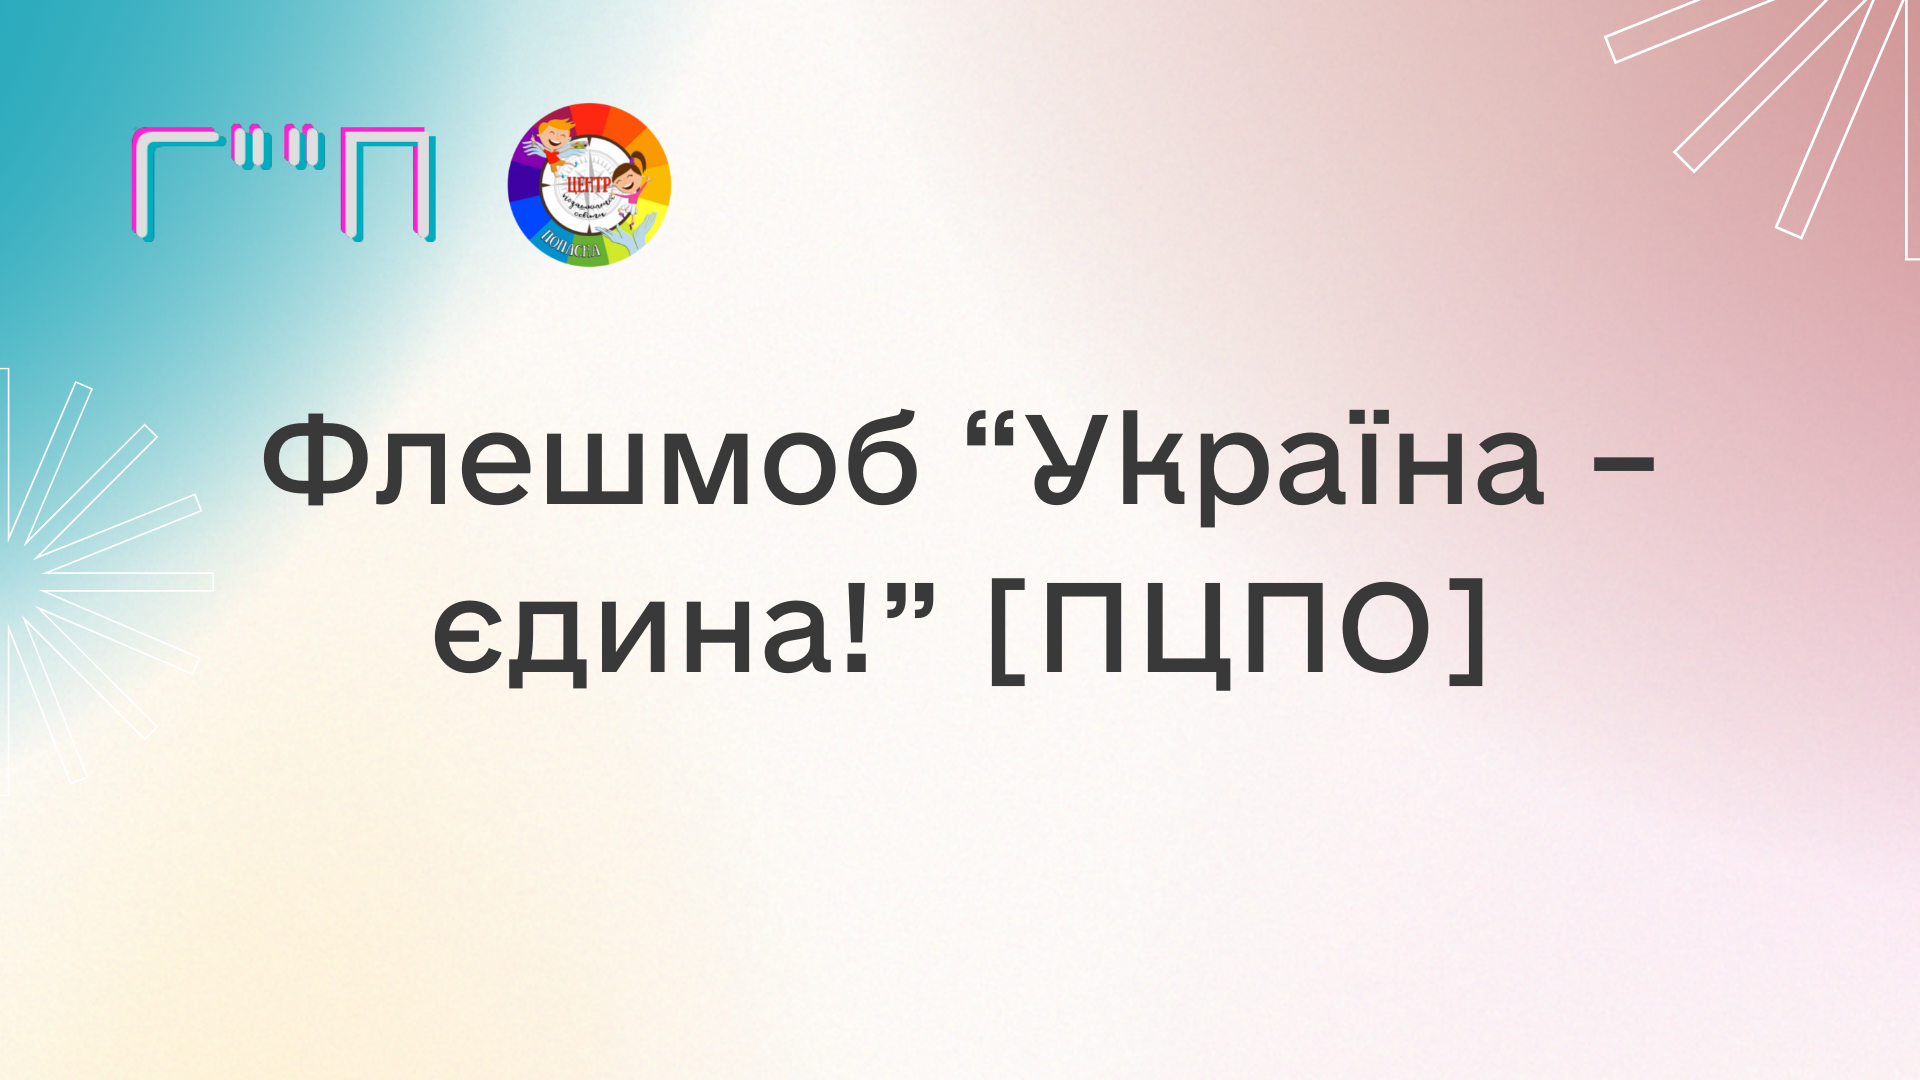 Флешмоб “Україна – єдина!” [ПЦПО]